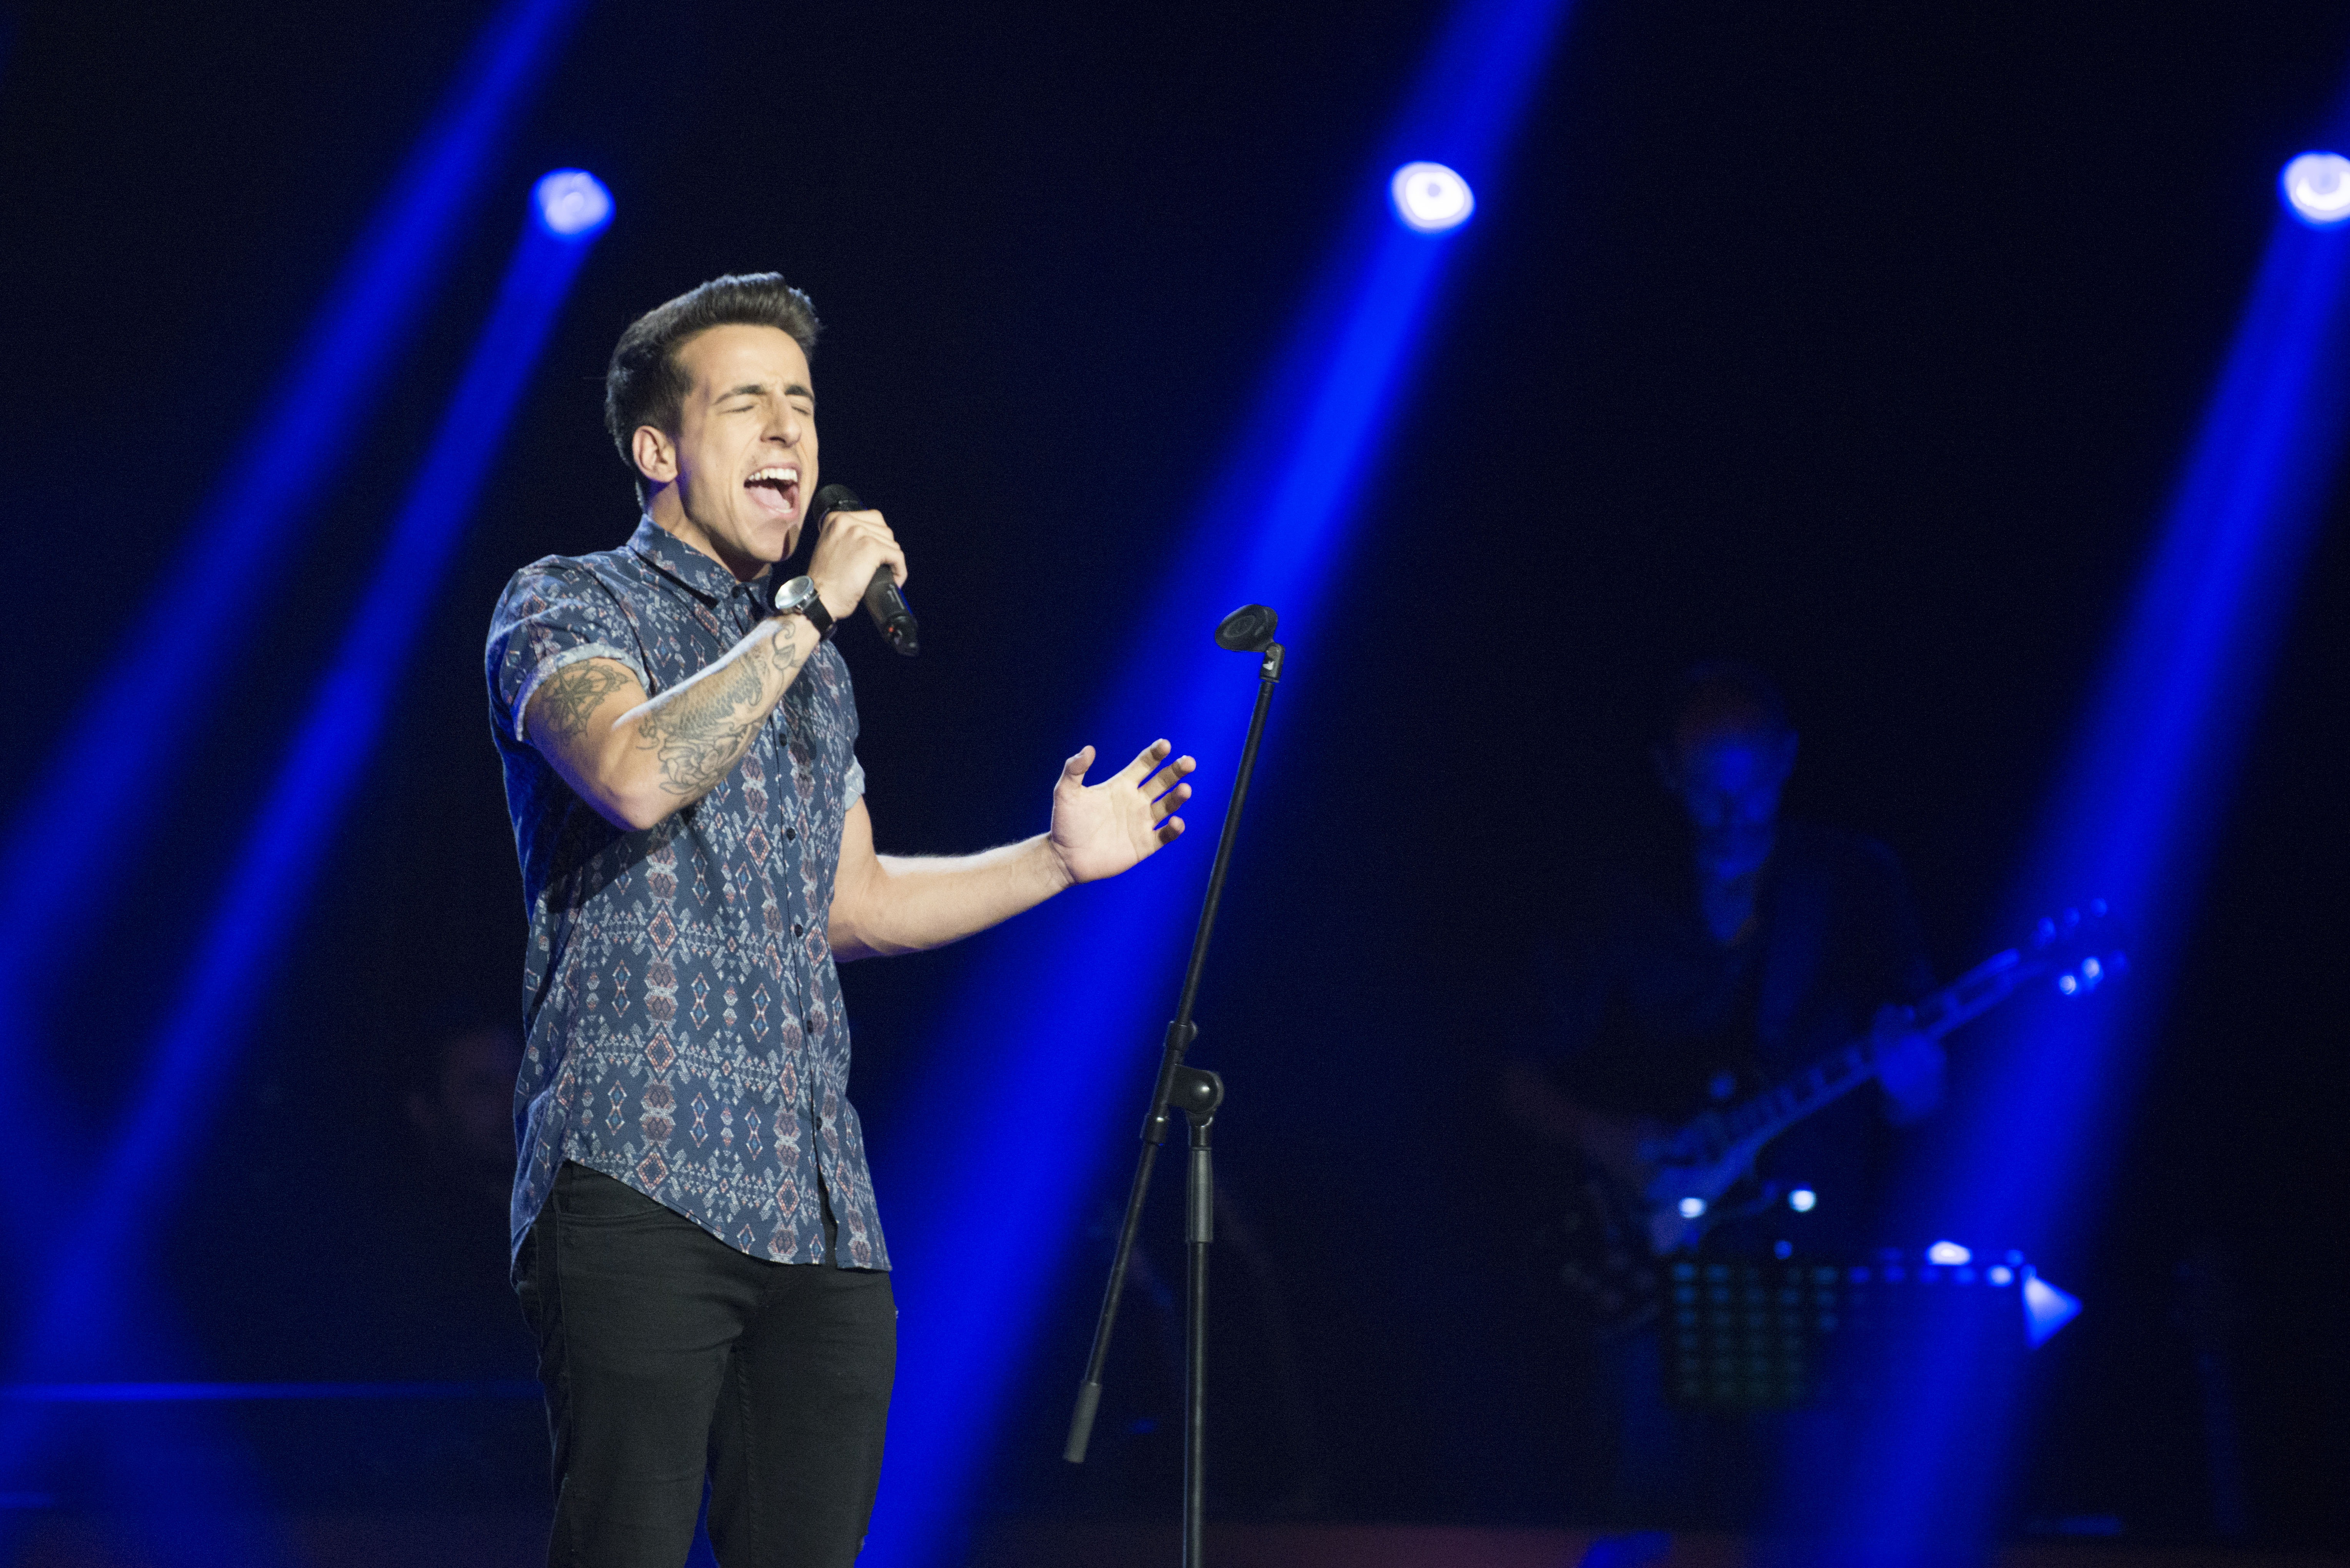 The Voice Portugal: Fernando Daniel fez os mentores girarem as cadeiras com “When we were Young” de Adele